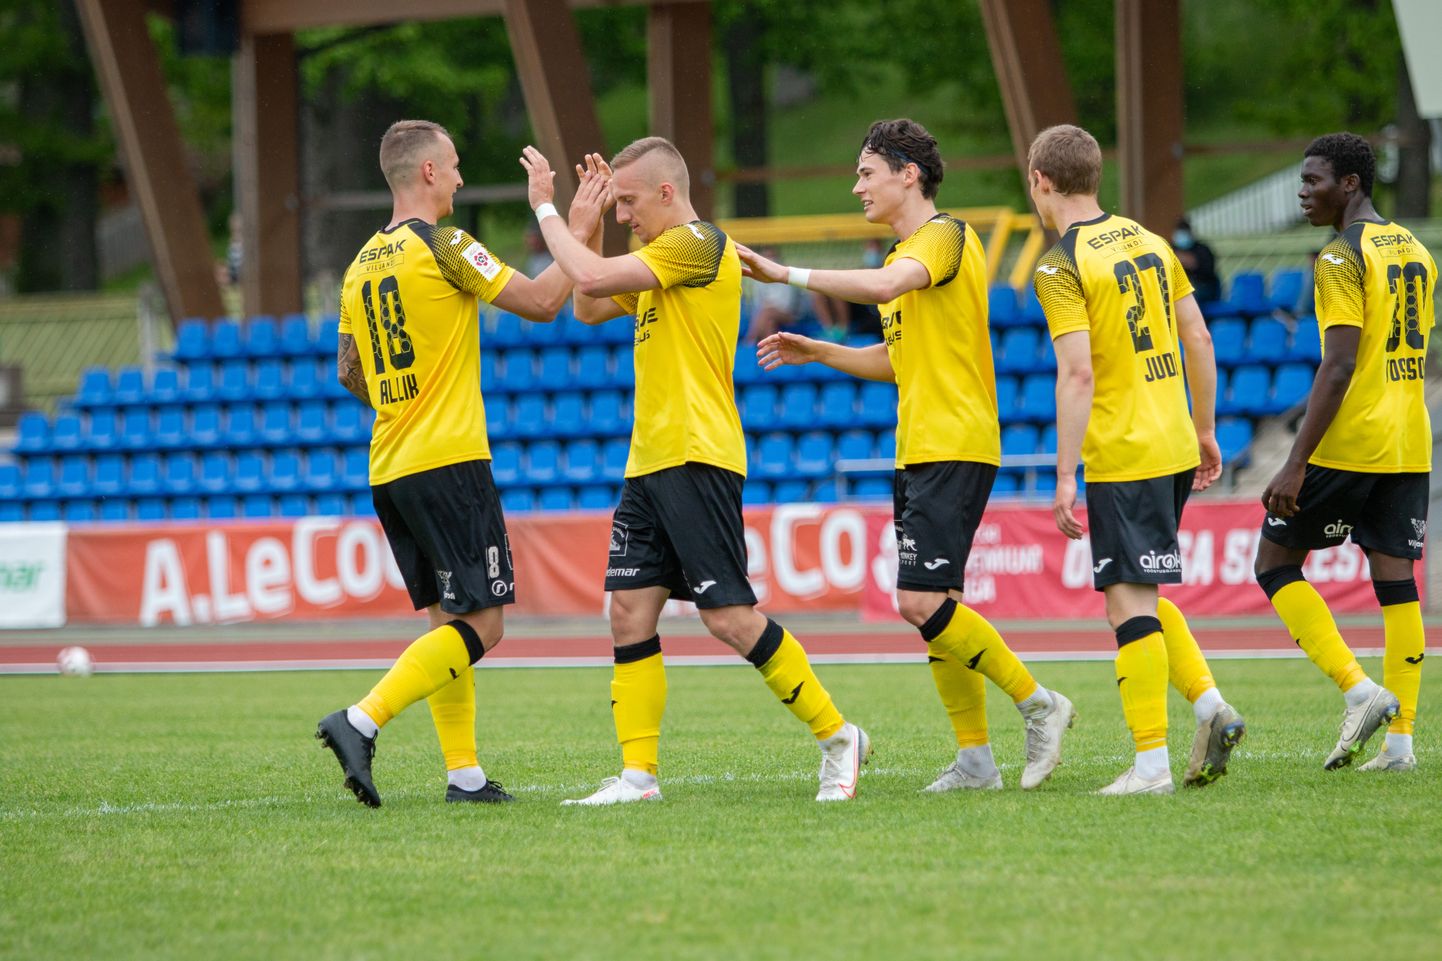 Reede õhtul pidi Viljandi Tulevik Tallinnas Premium-liiga kohtumises FC Floralt vastu võtma 0:3 kaotuse. Pilt on tehtud Viljandis, kui Tulevik oli vastamisi FC Kuressaarega.